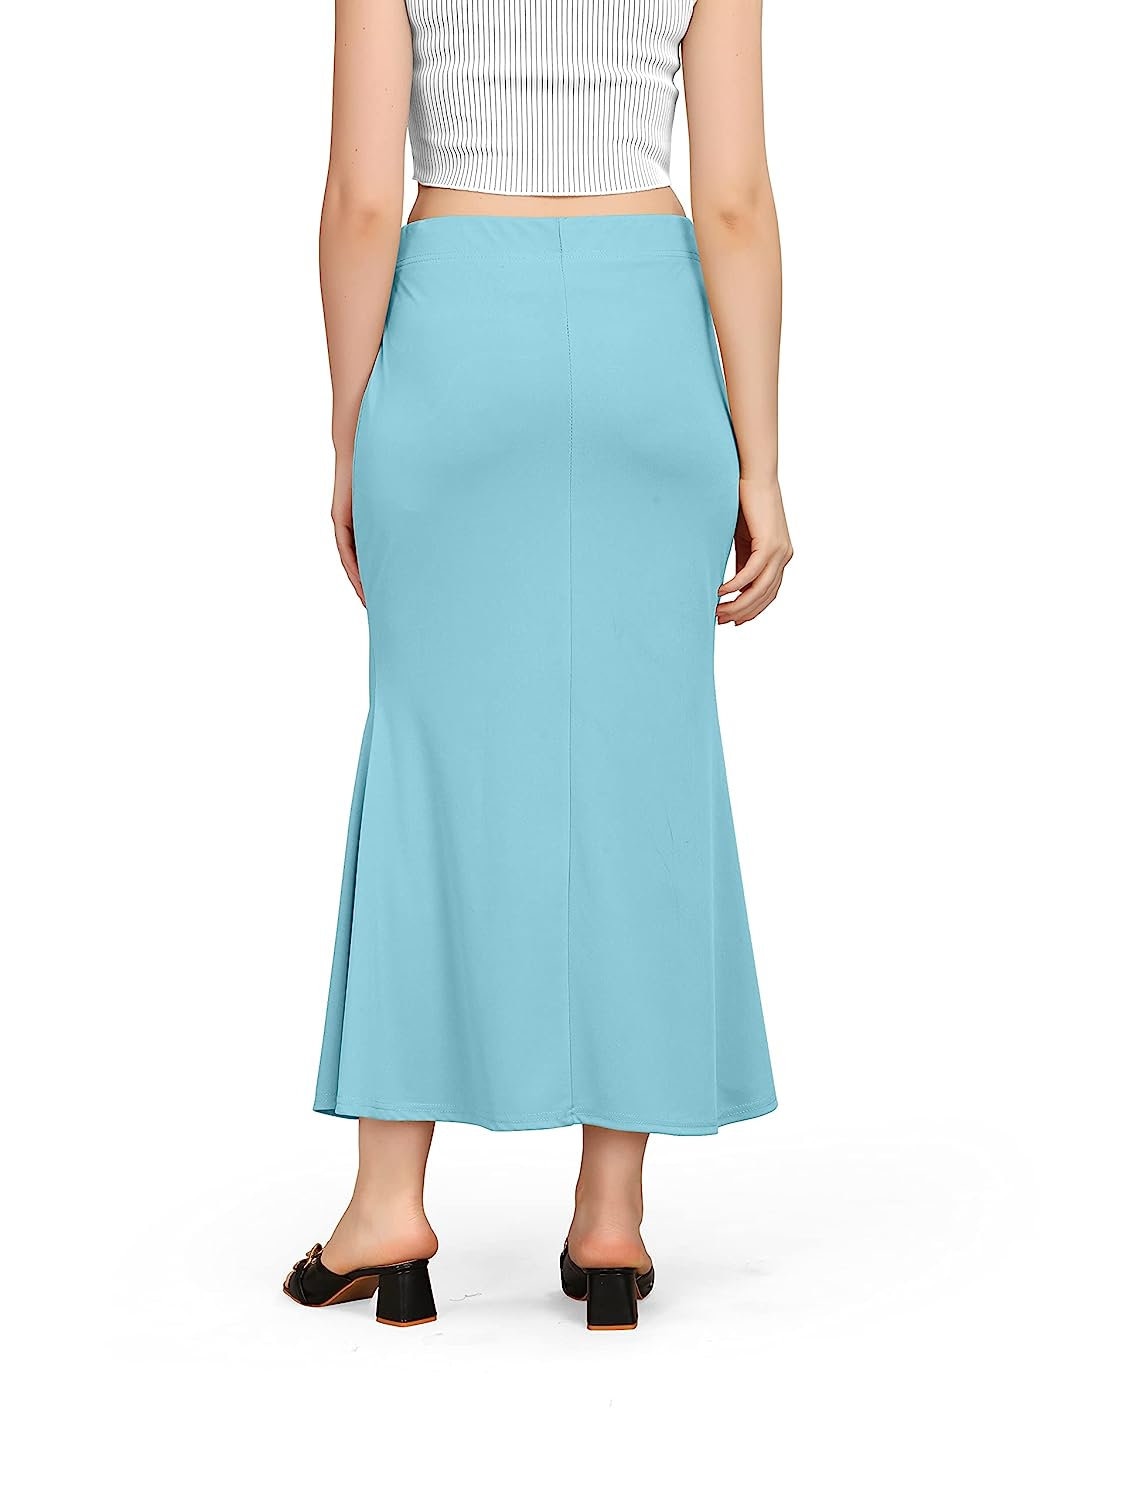 Blue Sari Petticoat -  Canada